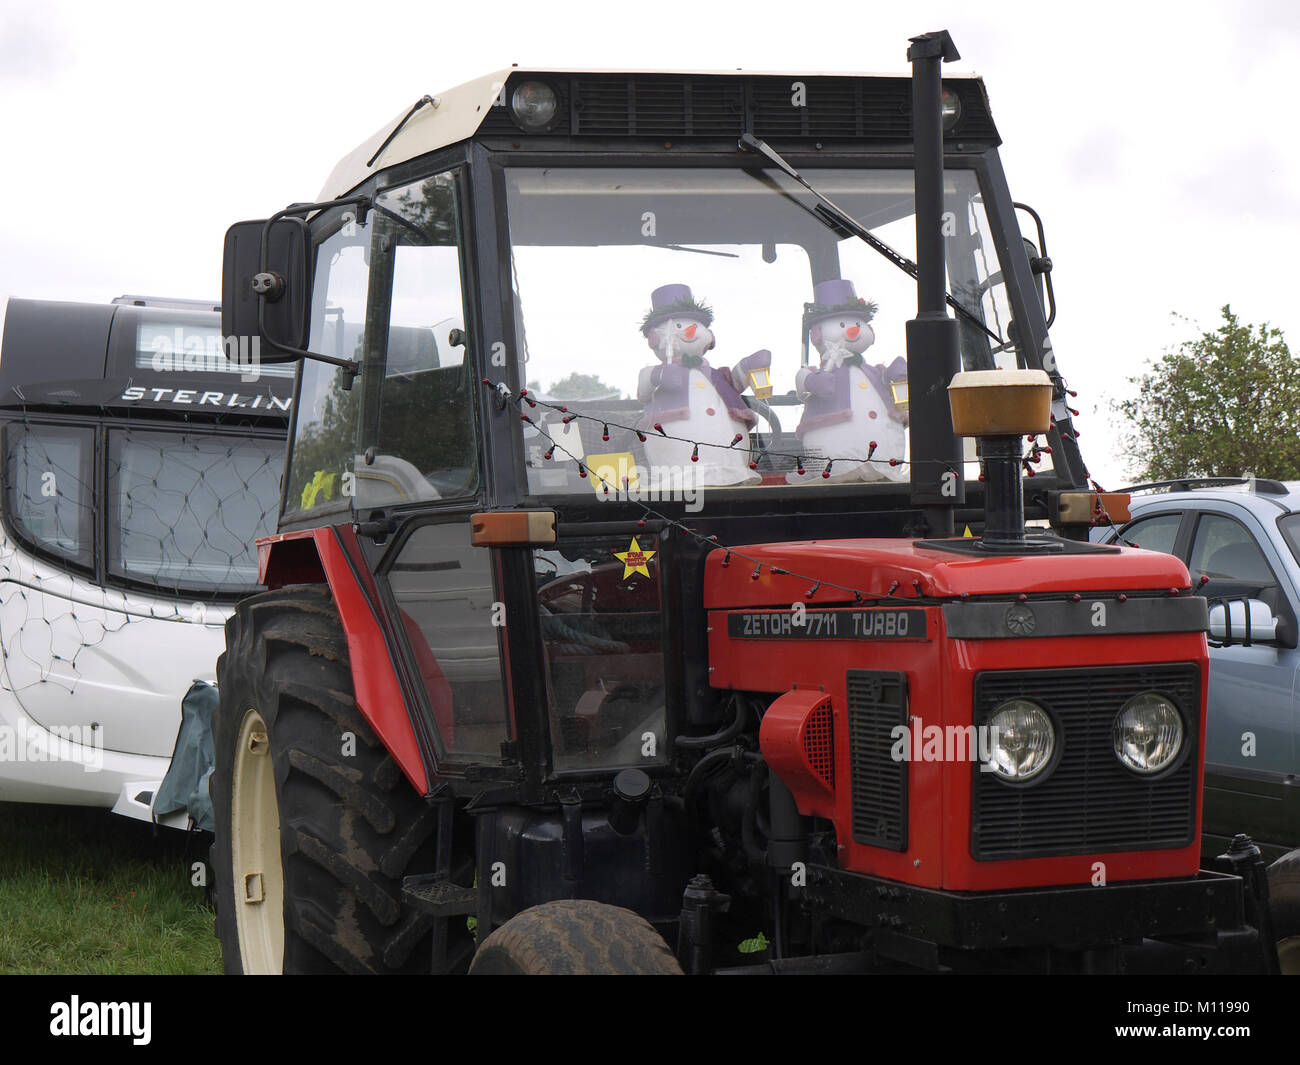 https://c8.alamy.com/compde/m11990/zeotor-traktor-mit-schneemanner-an-ashover-festival-der-lichter-m11990.jpg